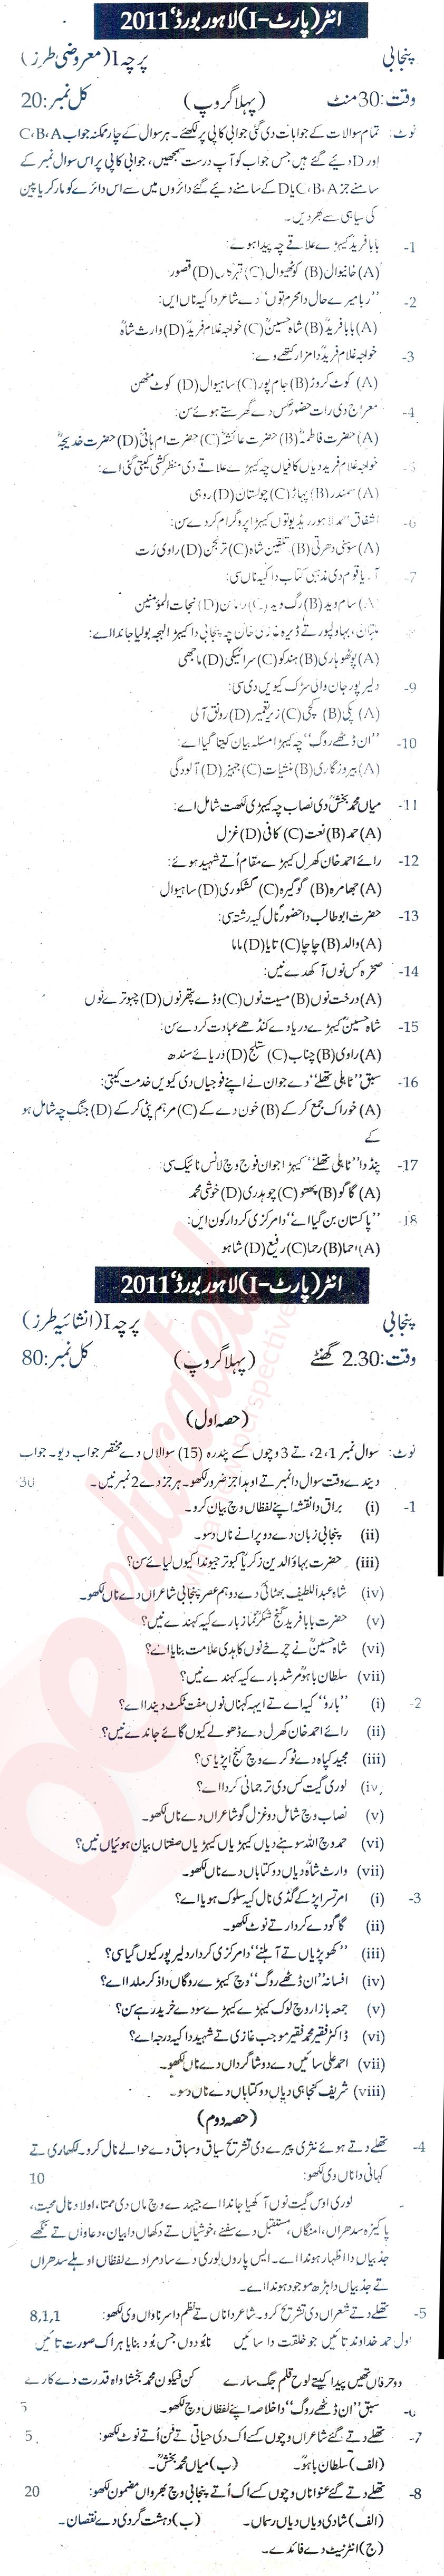 Punjabi FA Part 1 Past Paper Group 1 BISE Lahore 2011